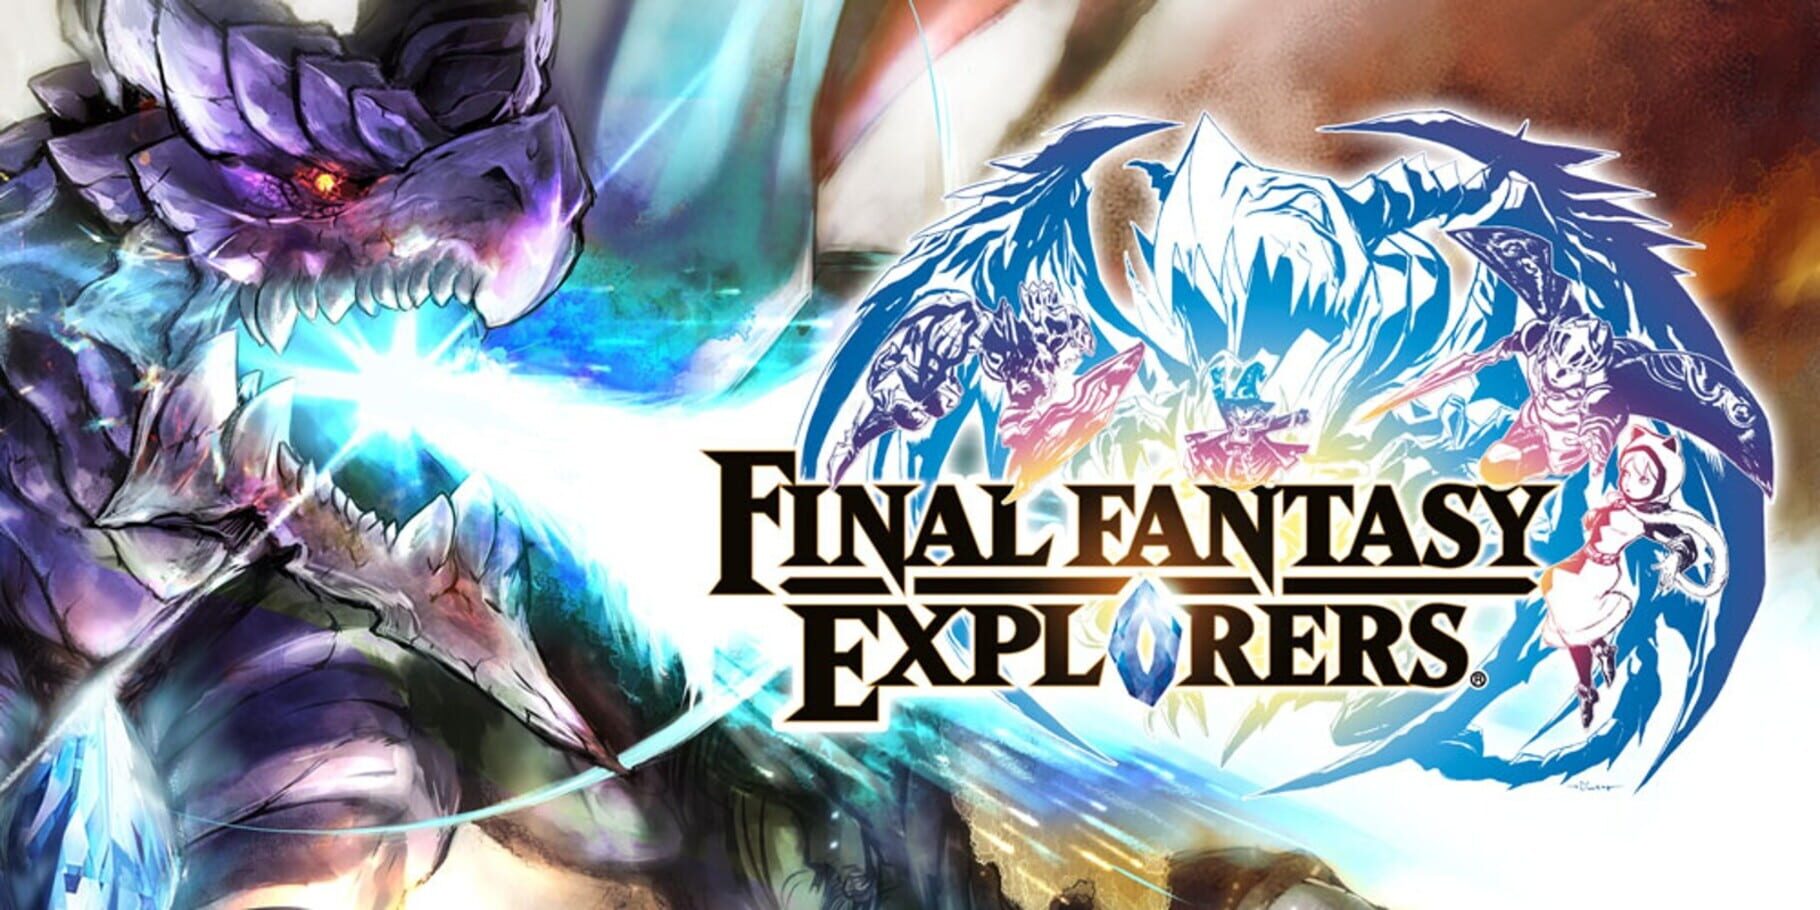 Artwork for Final Fantasy: Explorers